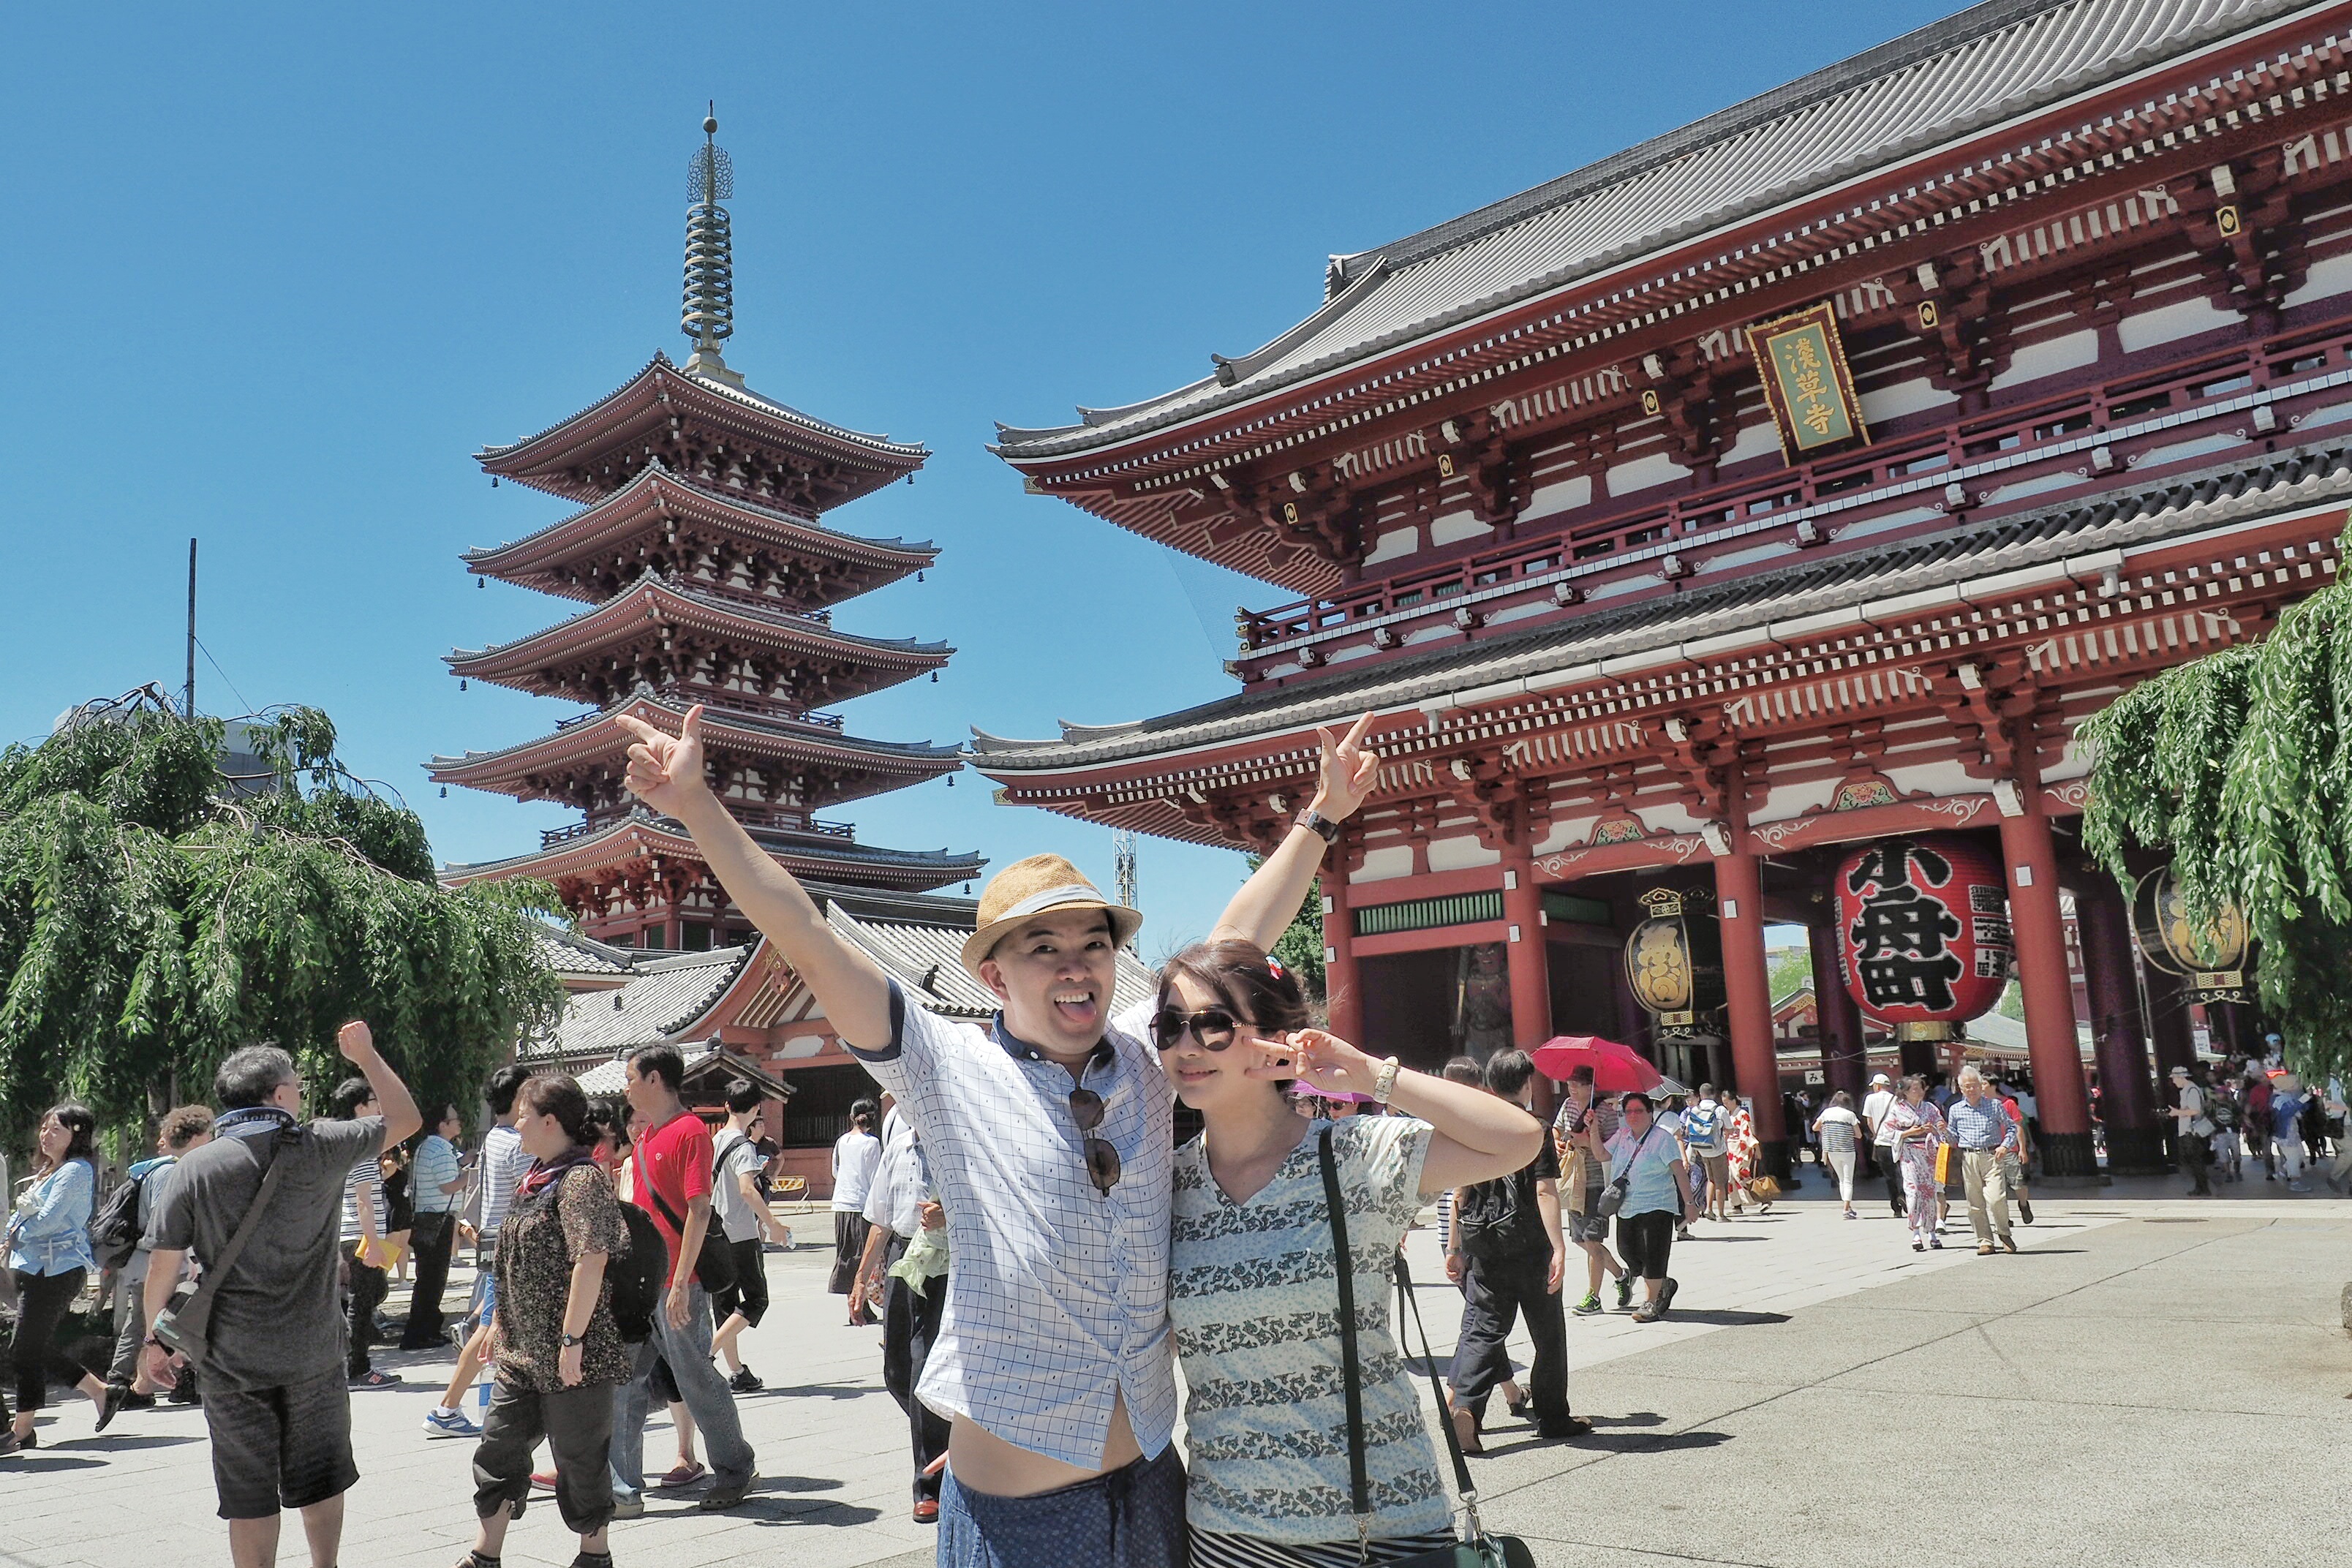 Here we are at Sensoji Temple Asakusa Temple by Myfunfoodiary